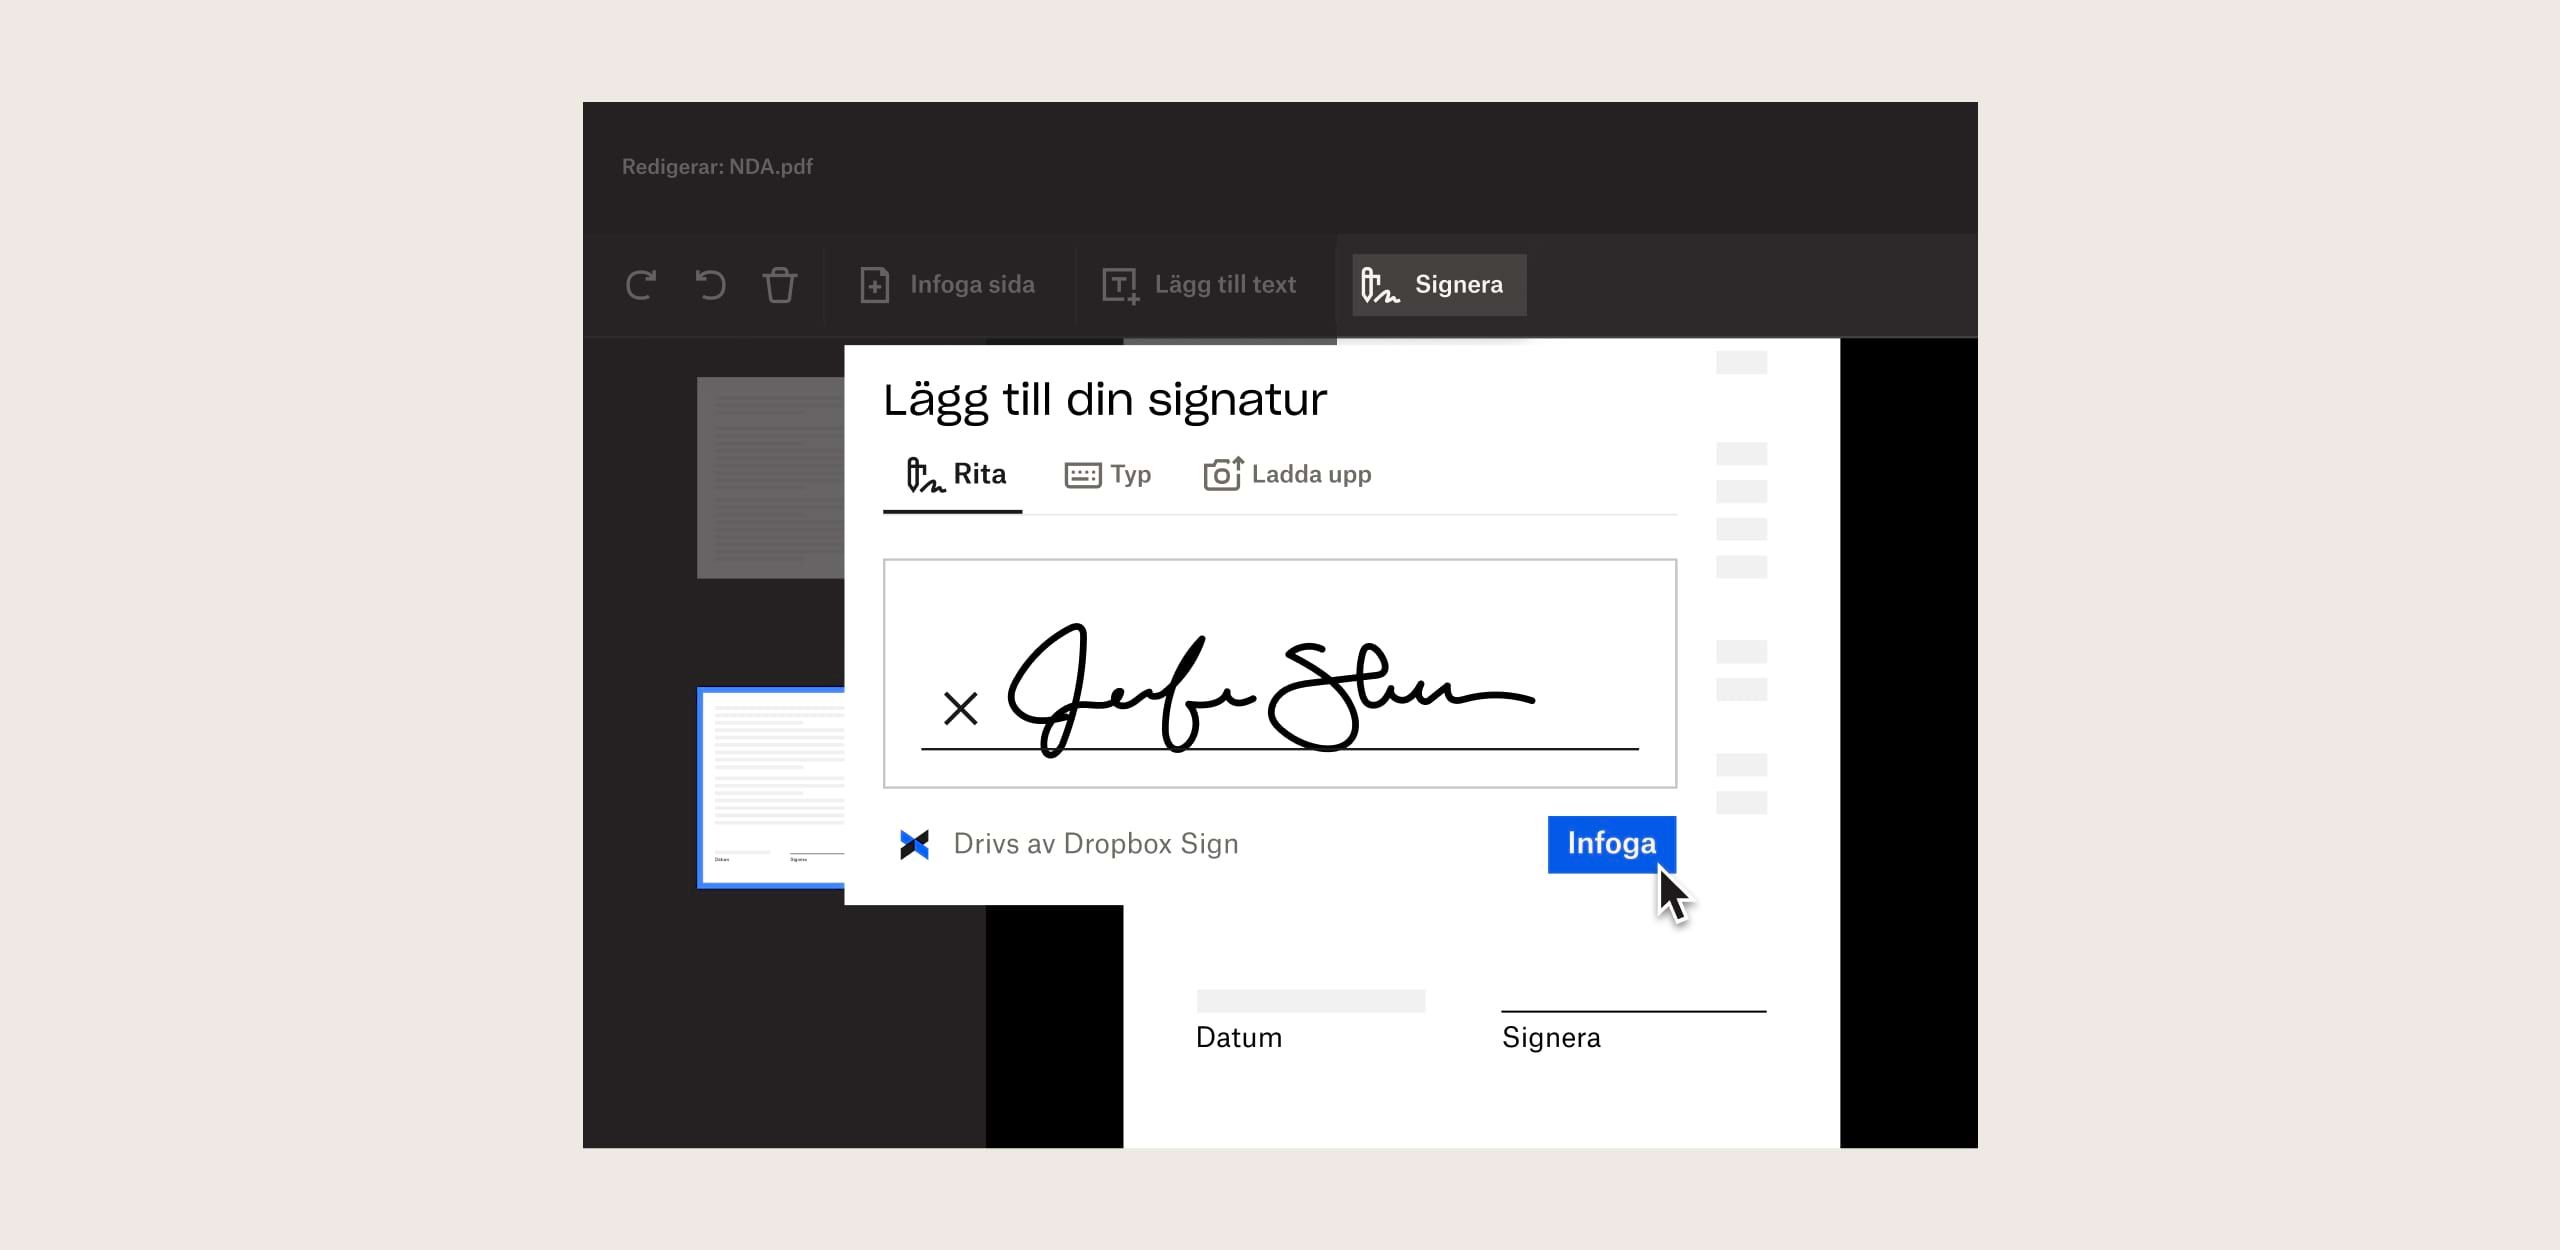 En person infogar sin signatur i ett dokument med Dropbox Sign